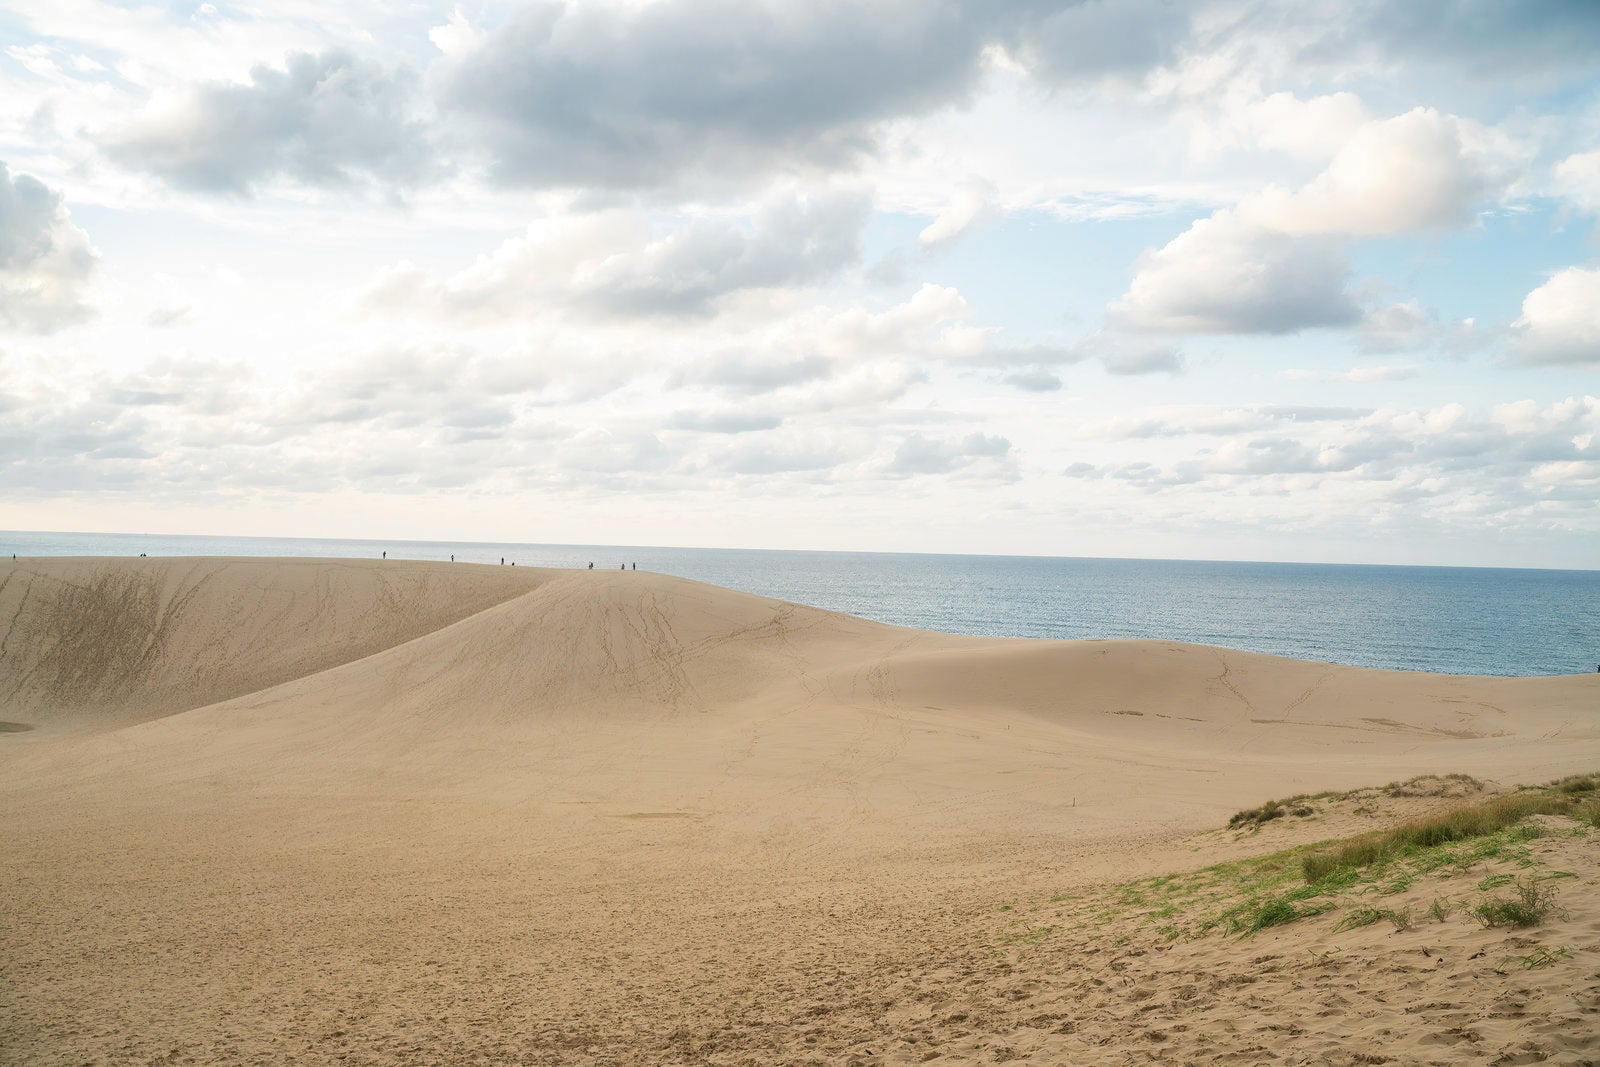 「砂丘から望む水平線」の写真